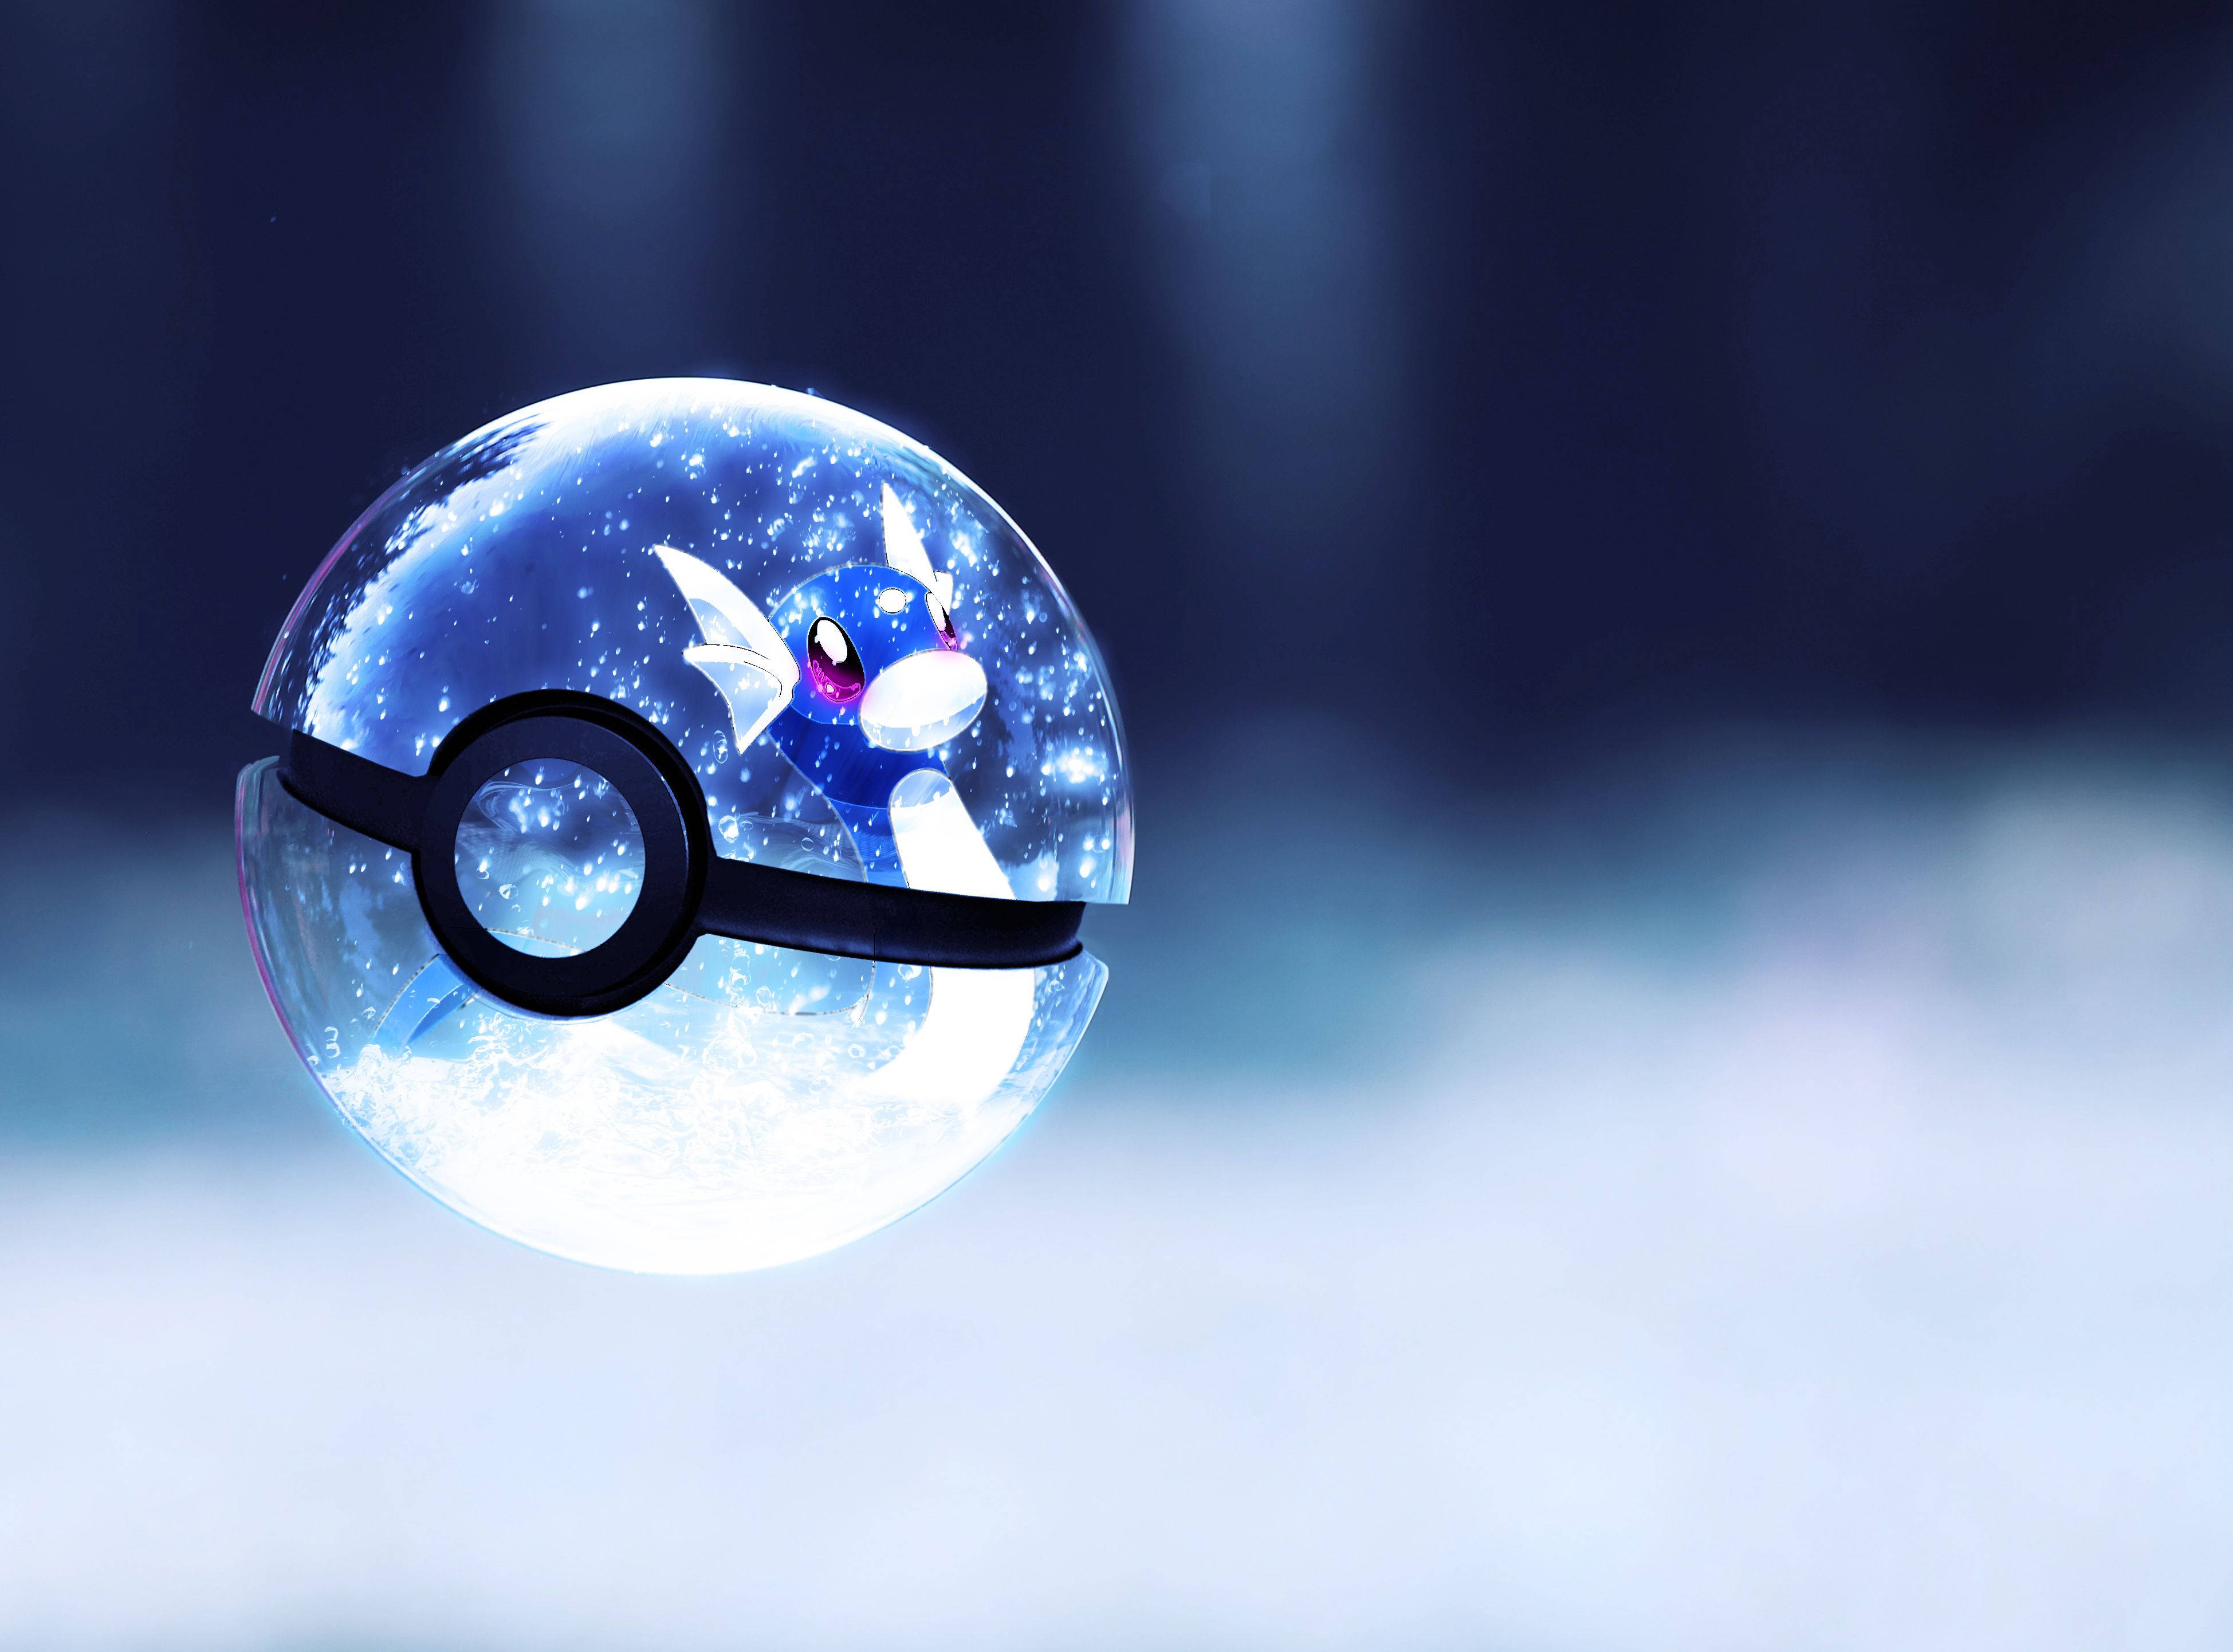 Trending Blue Pokeball With Dratini Pokemon Wallpaper